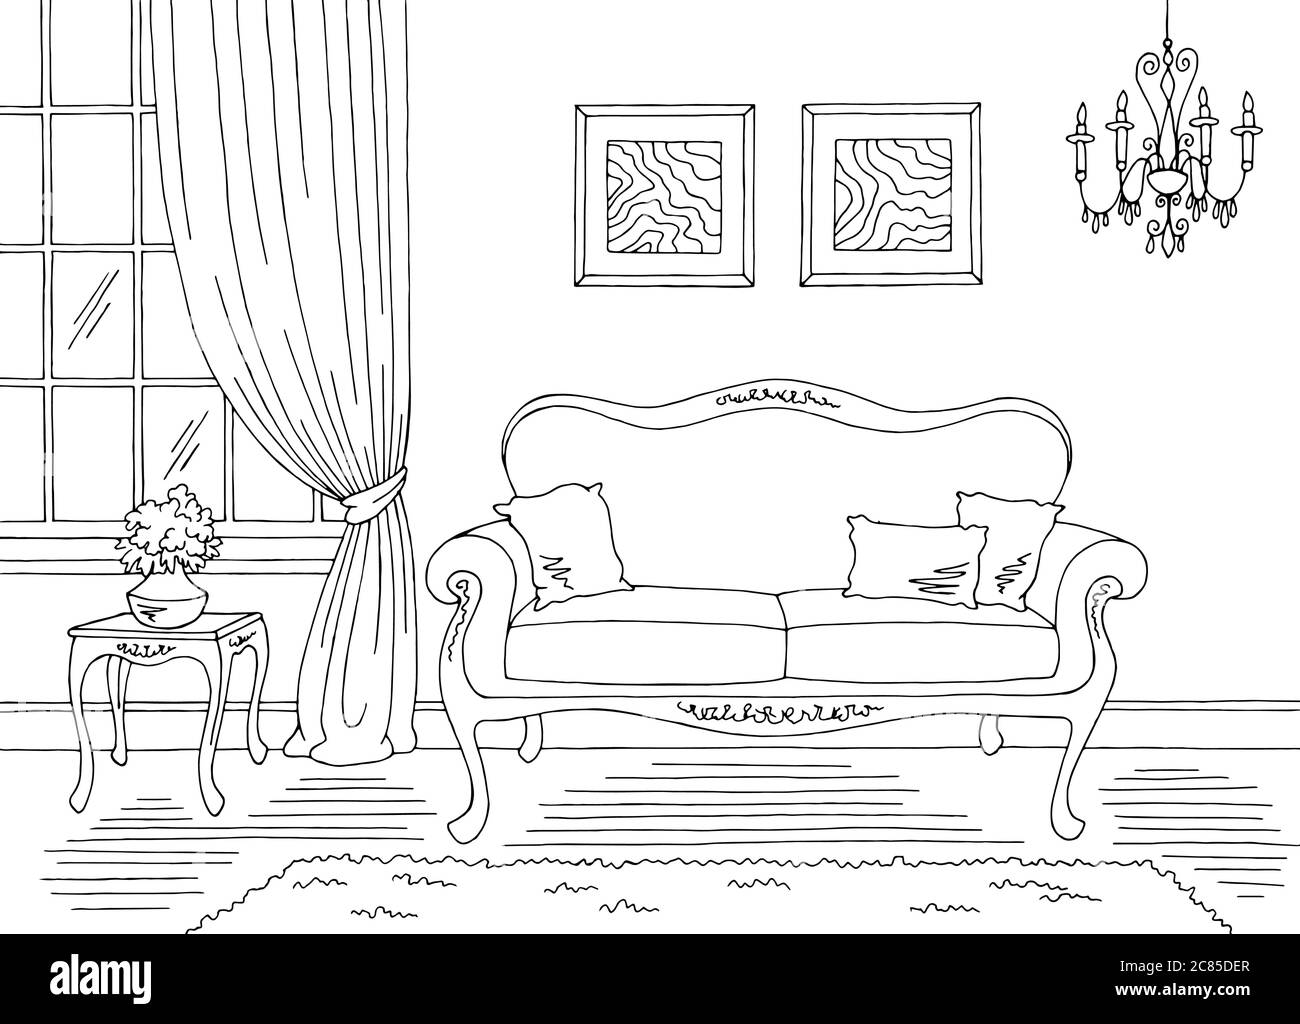 Wohnzimmer Grafik schwarz weiß klassisch Heim Interieur Skizze Illustration Vektor Stock Vektor